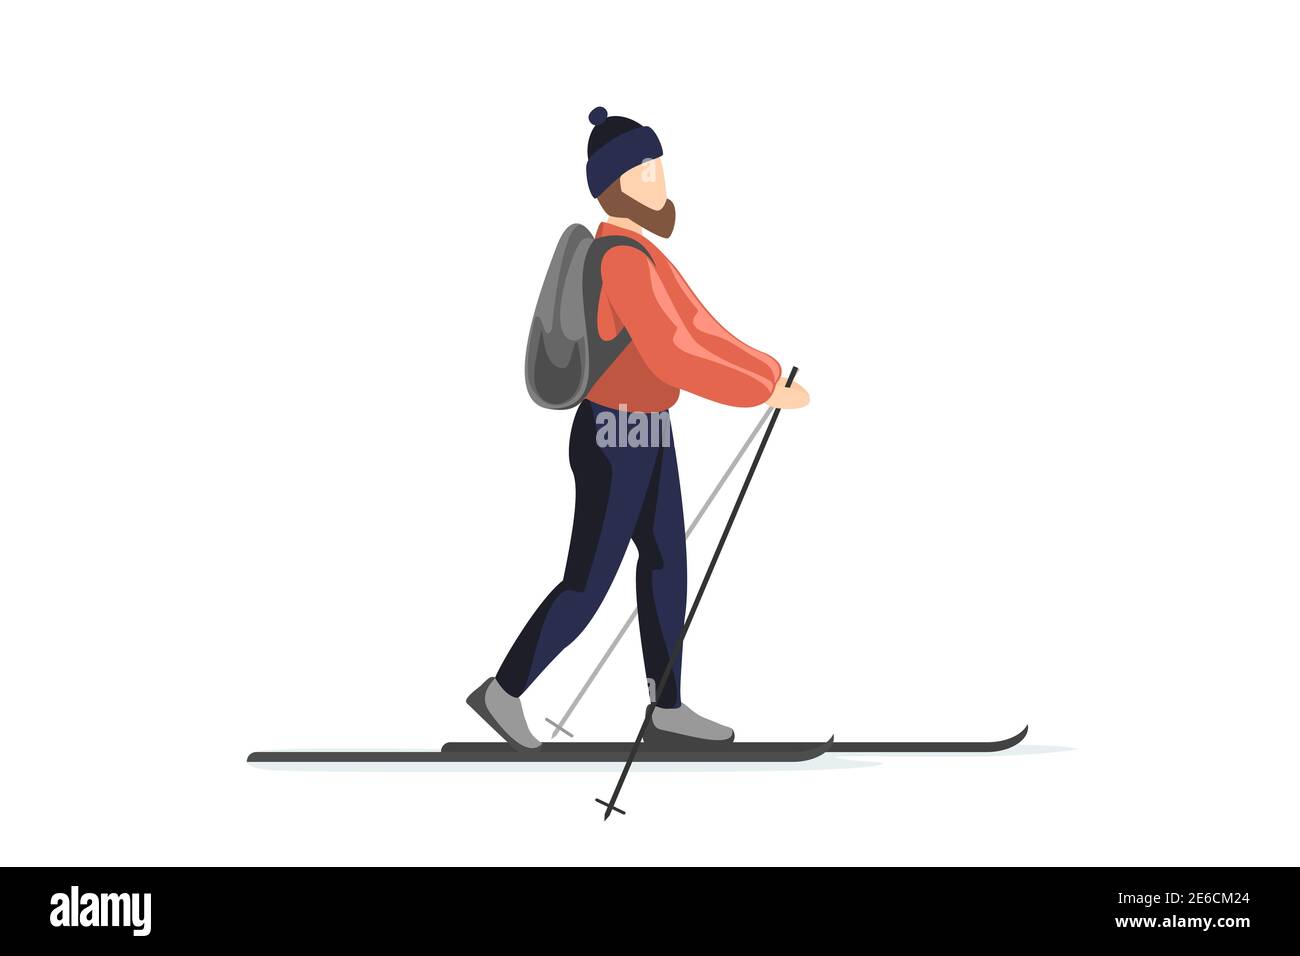 Skieur en vêtements d'hiver et chapeau avec sac à dos est le ski. L'homme s'entraîne à pied sur des skis. Vacances loisirs ski sport activité vecteur illustration isolée Illustration de Vecteur